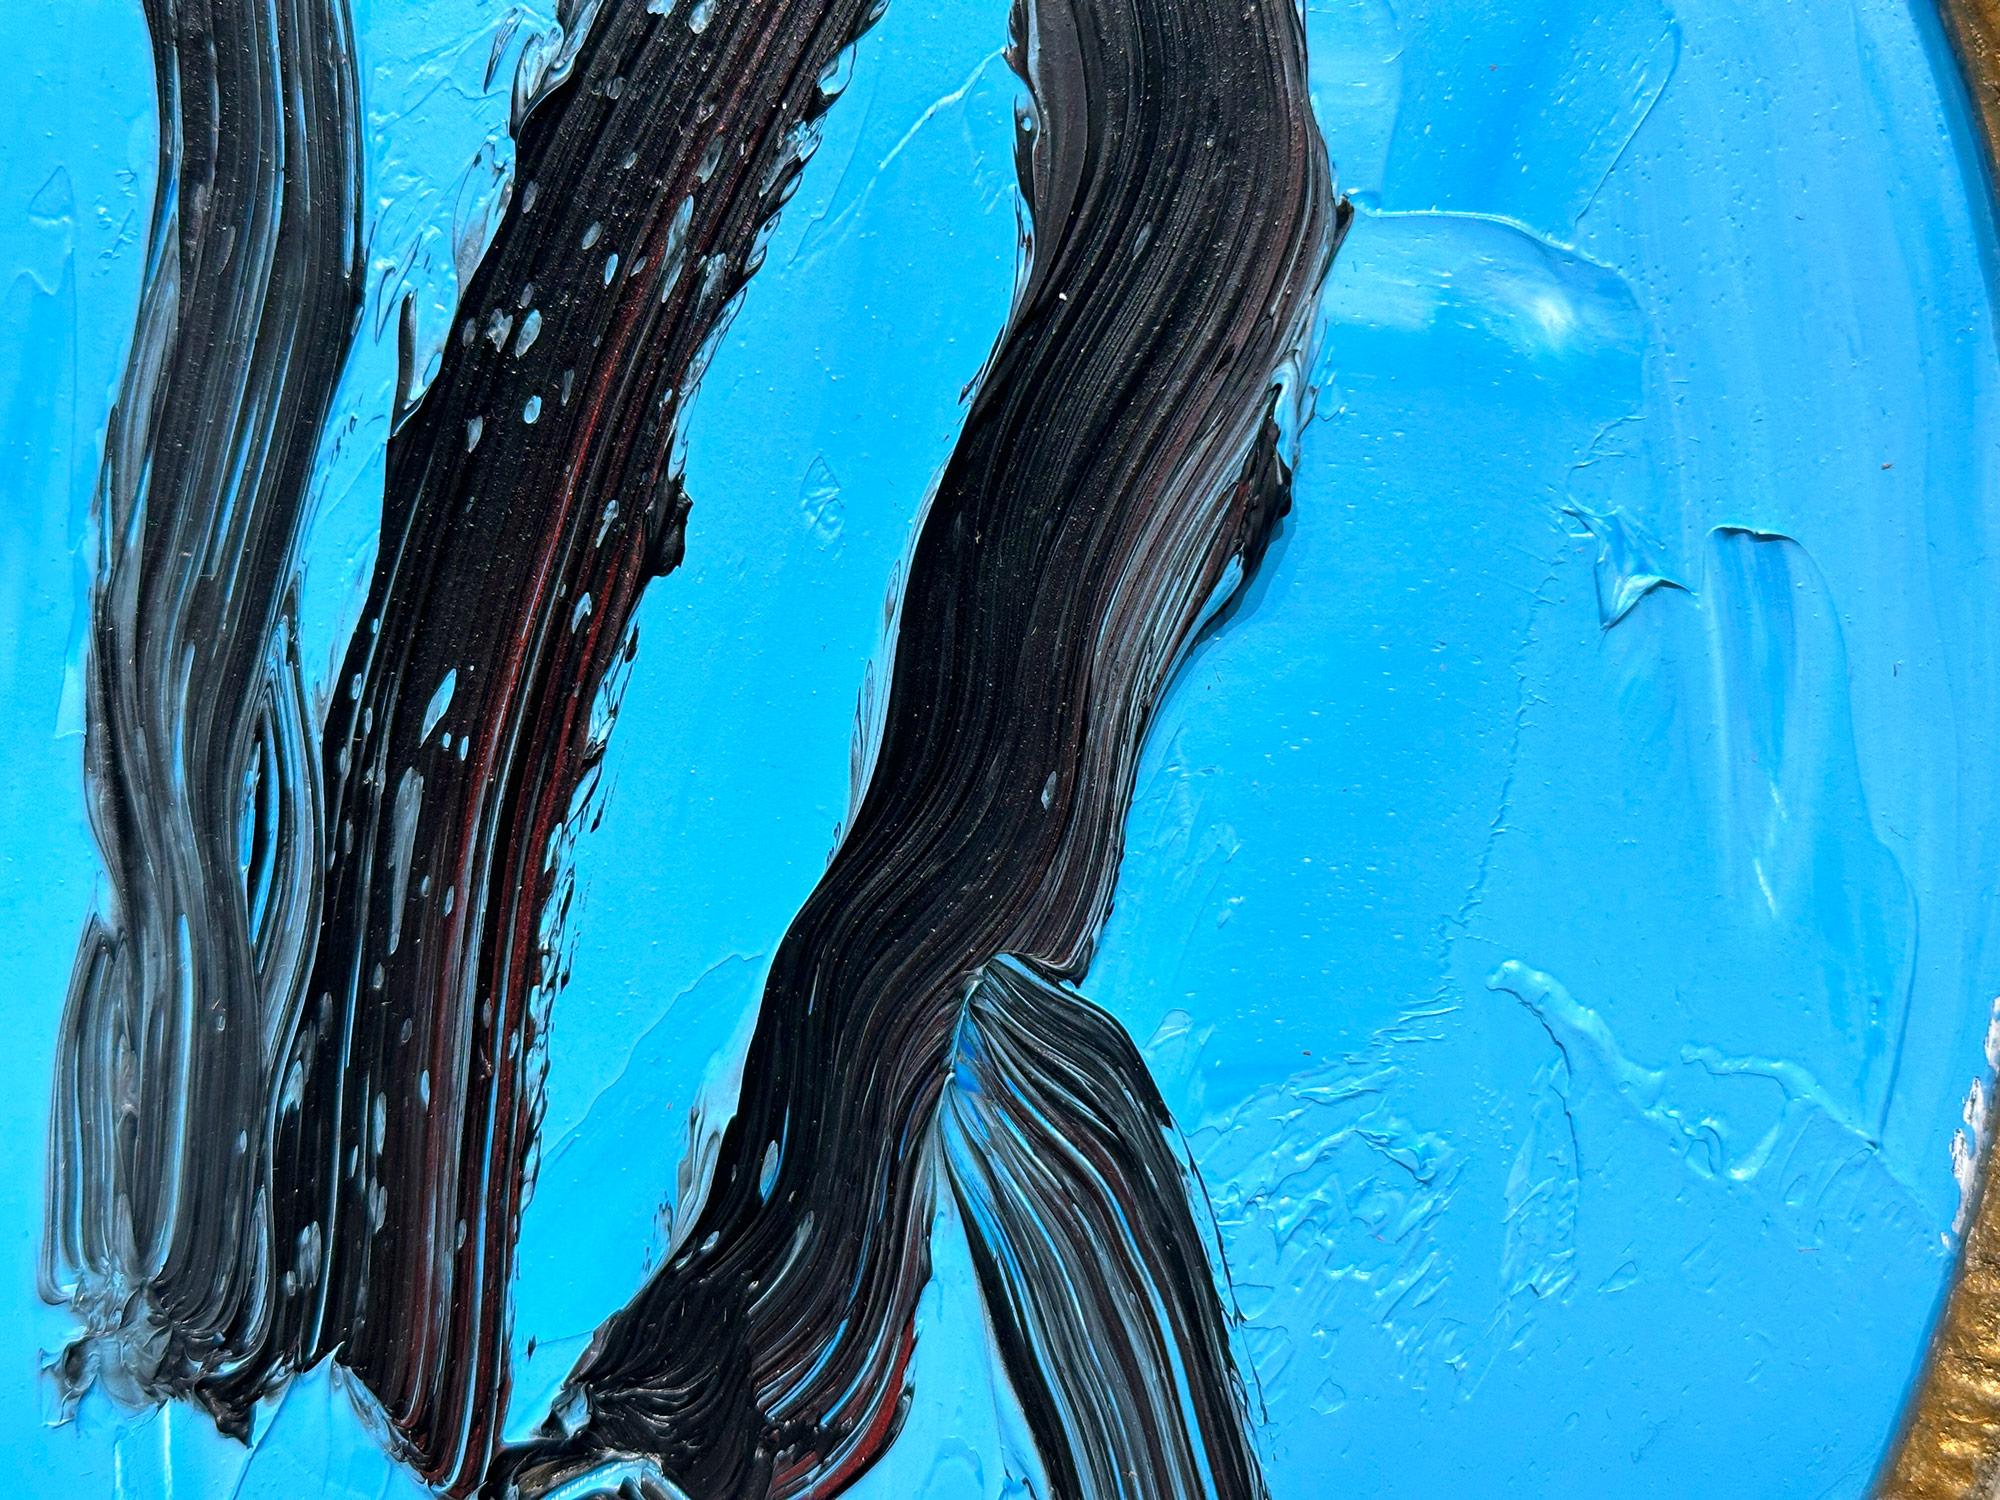 Eine wunderbare Komposition eines der ikonischsten Themen von Slonem, nämlich Hasen. Dieses Werk zeigt eine gestische Figur eines schwarzen Hasen auf französisch-blauem Hintergrund mit dickem Farbauftrag. Es ist in einem wunderschönen antiken Rahmen